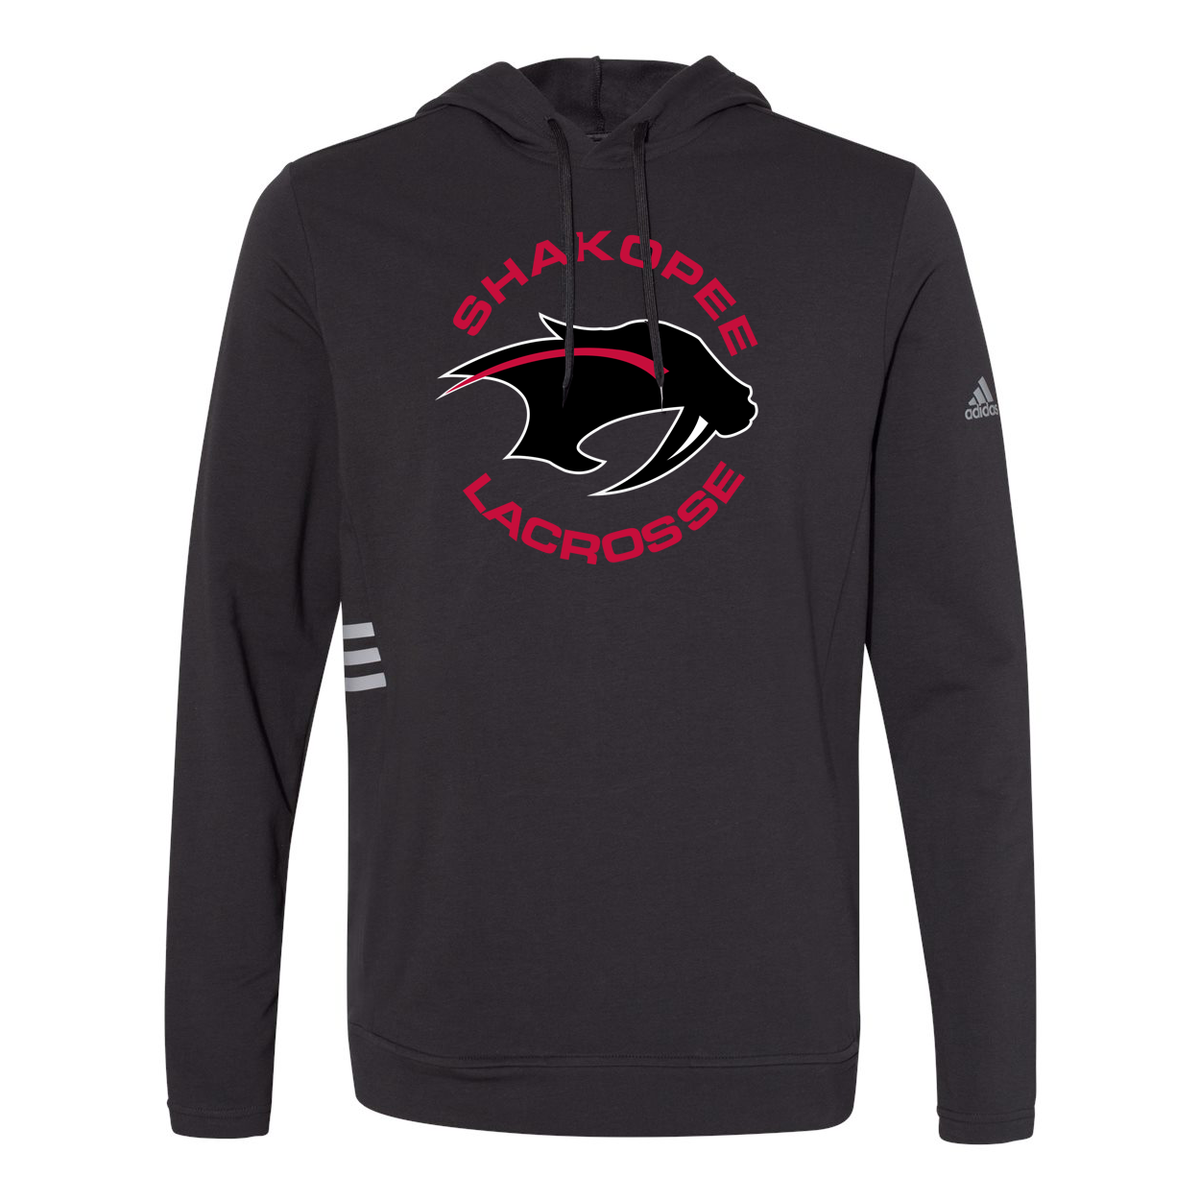 Shakopee Lacrosse Adidas Sweatshirt